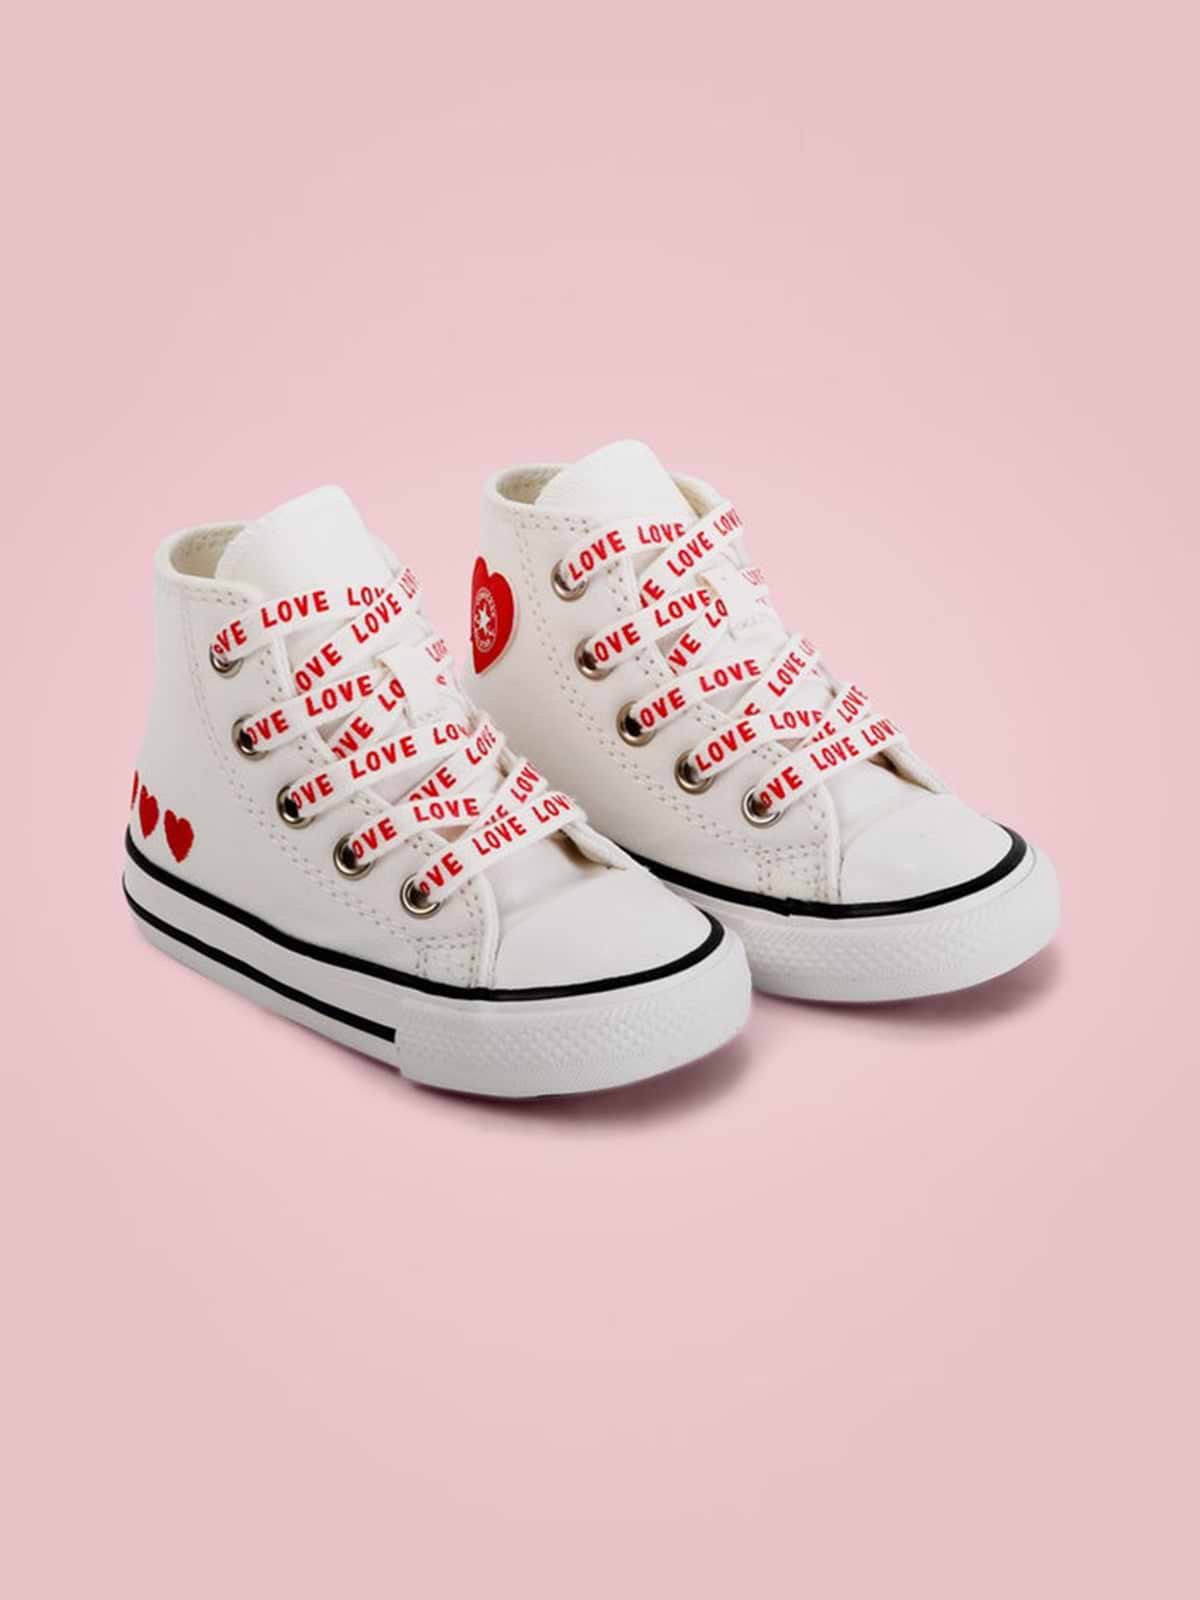 נעלי סניקרס גבוהות Valentine's Limited Edition / תינוקות- Converse|קונברס